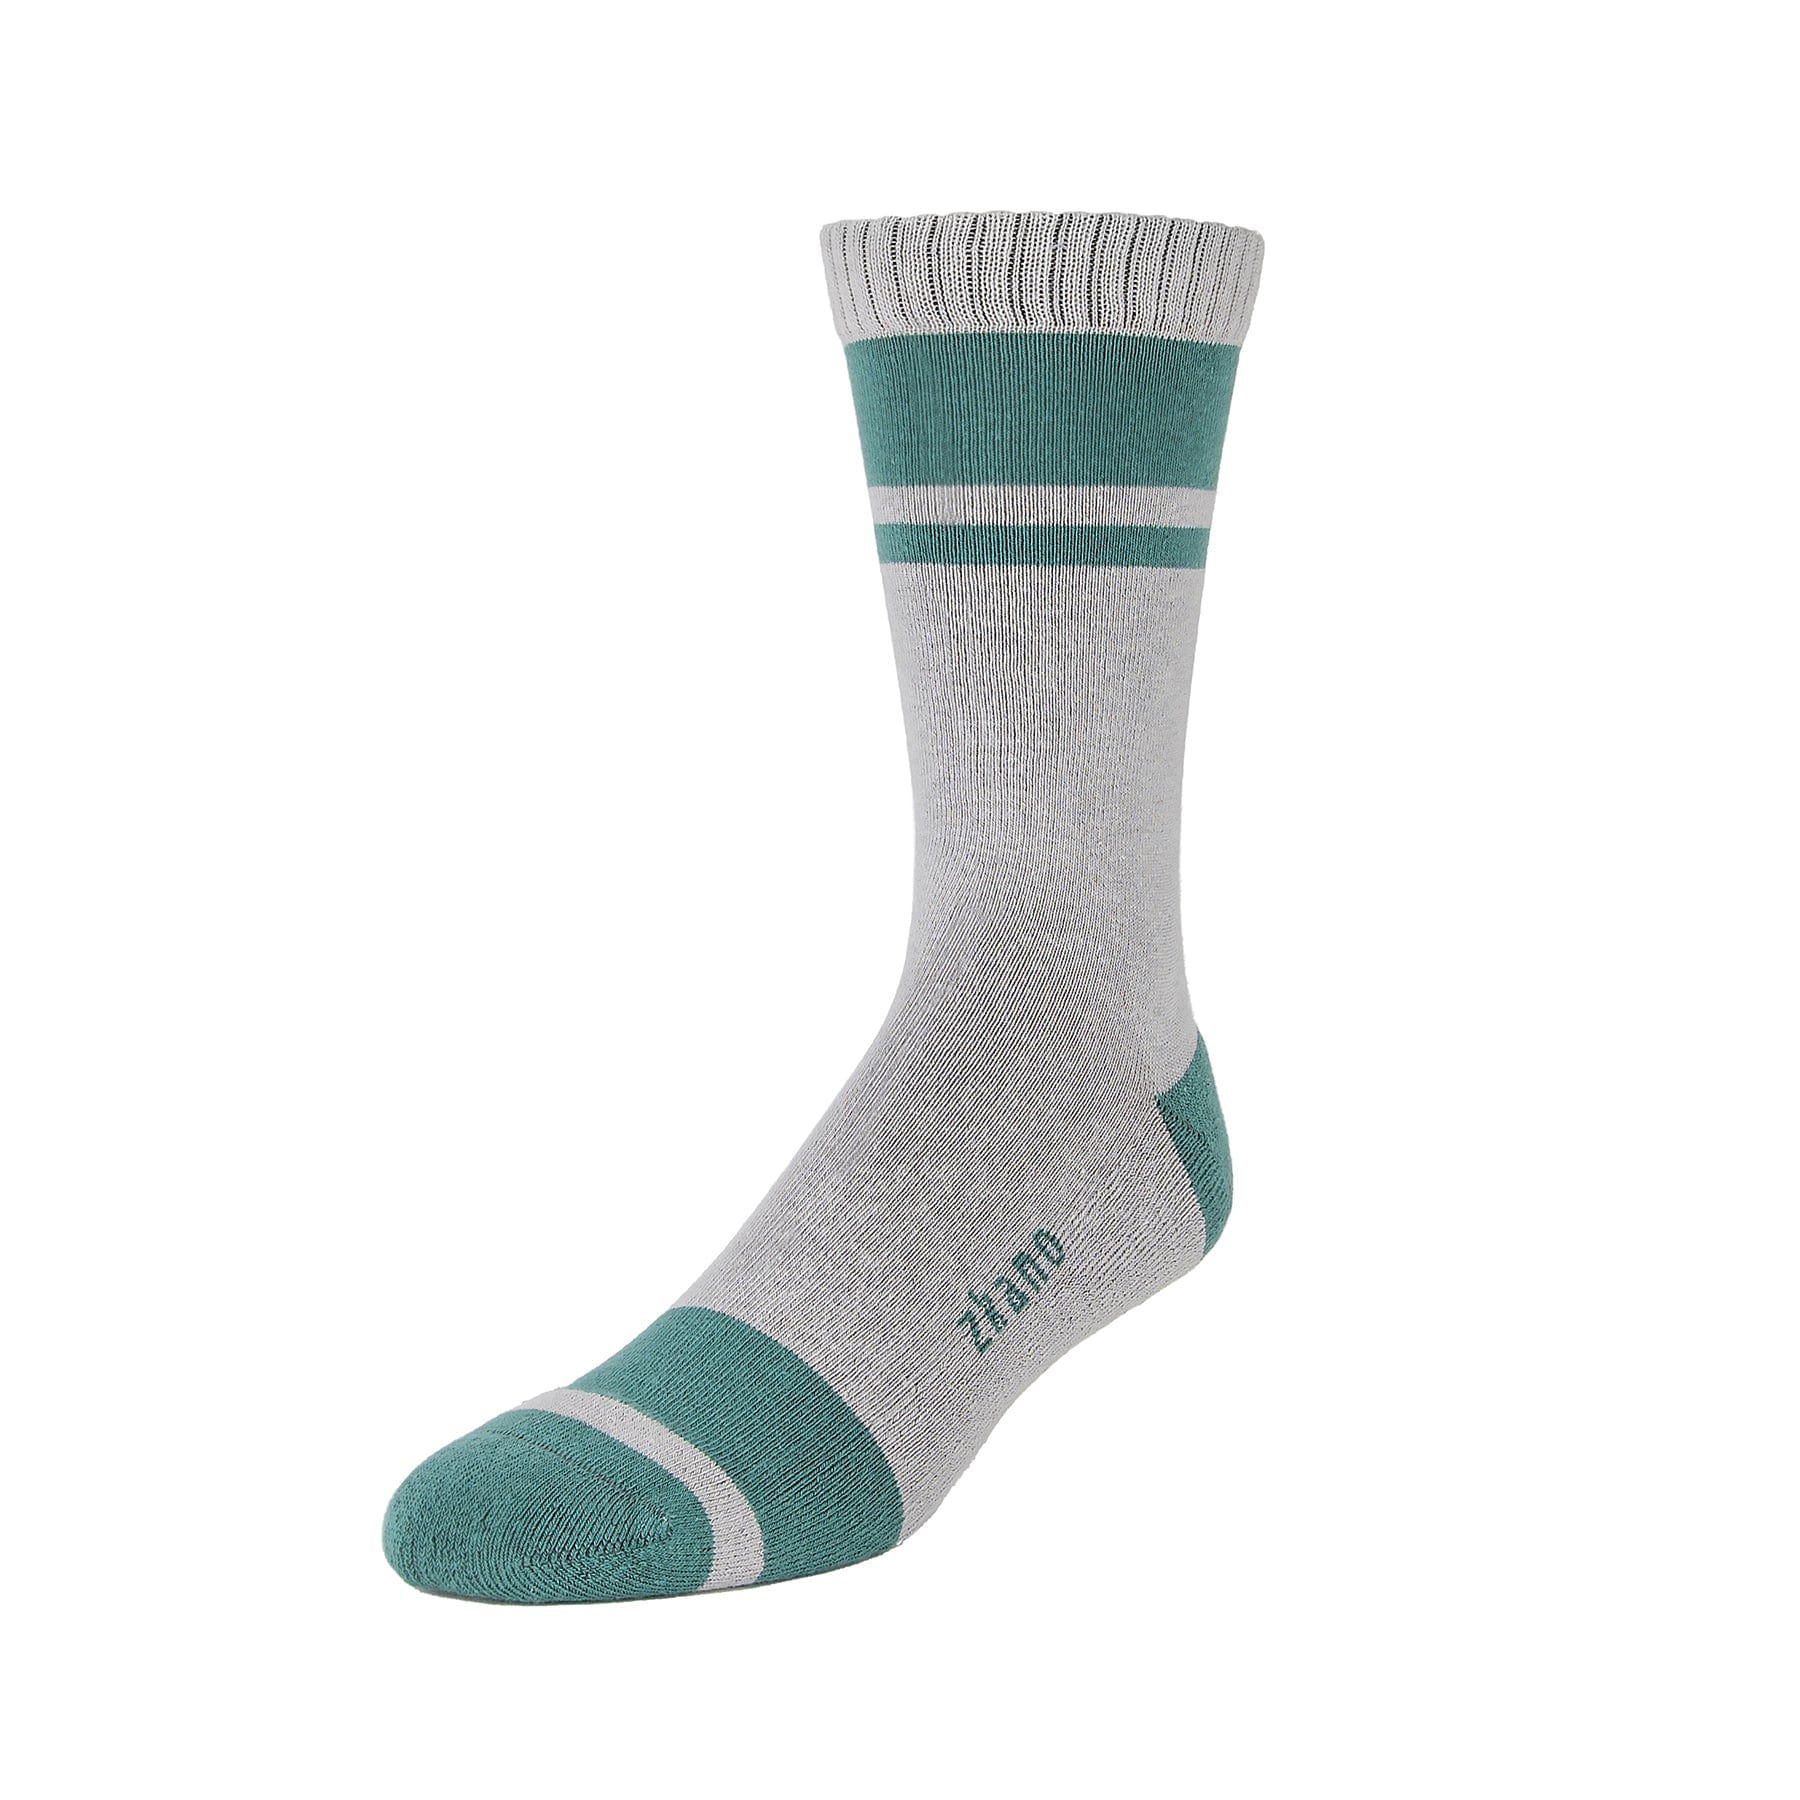 Little River Fir Socks Organic - zkano Crew socks - – Cotton Cushion